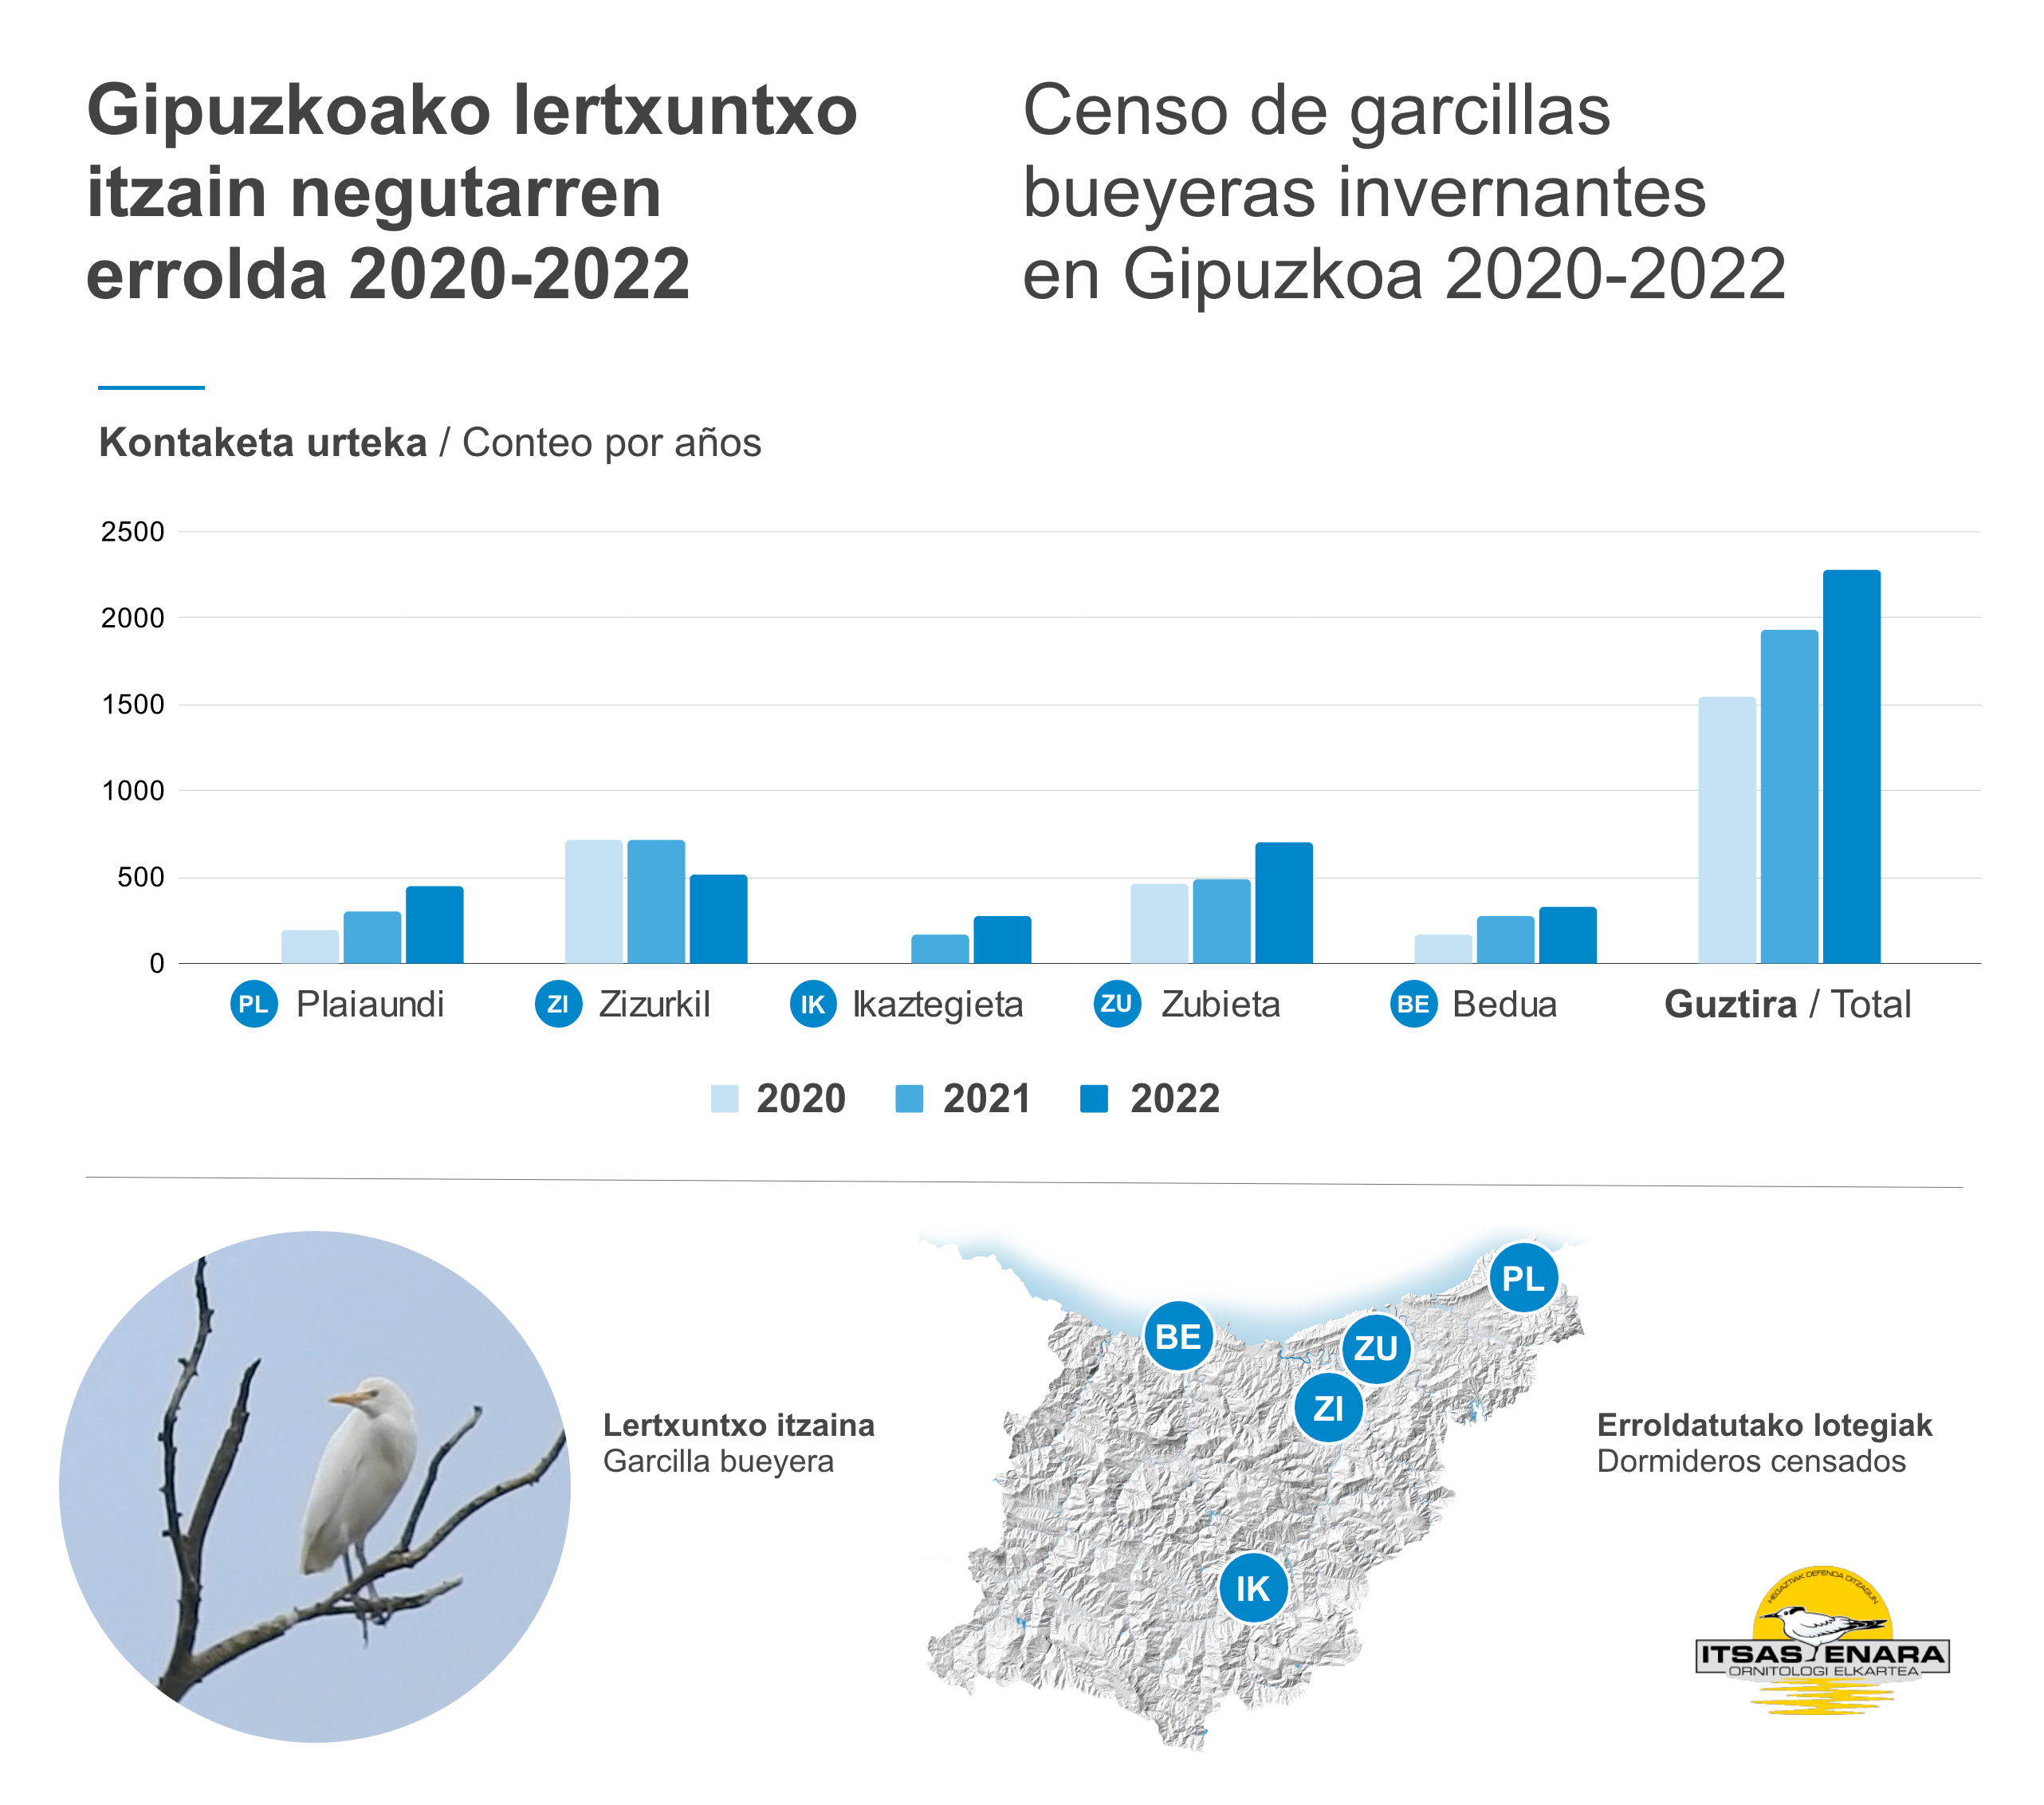 gráfica con las cifras de garcillas invernantes en Gipuzkoa desde 2020 a 2022 para cada dormidero